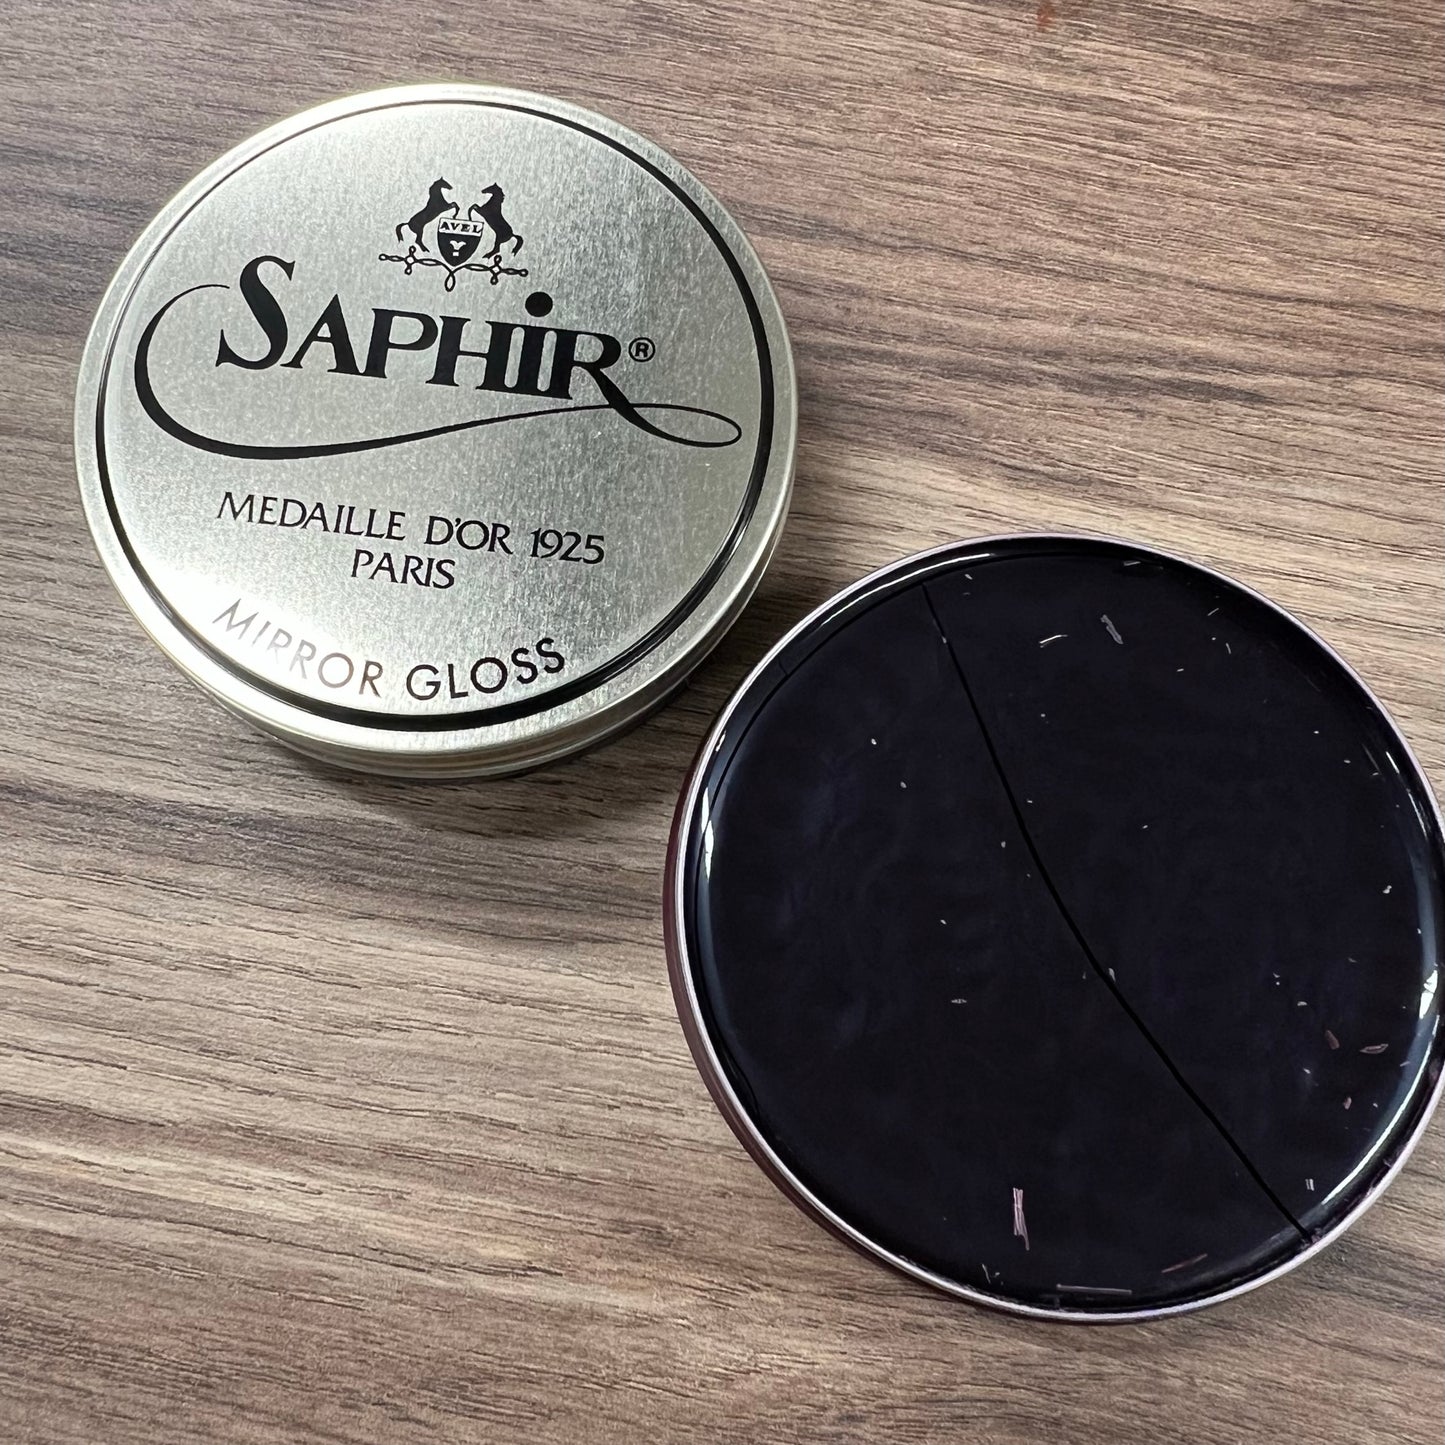 Saphir Medaille D'or Mirror Gloss Wax